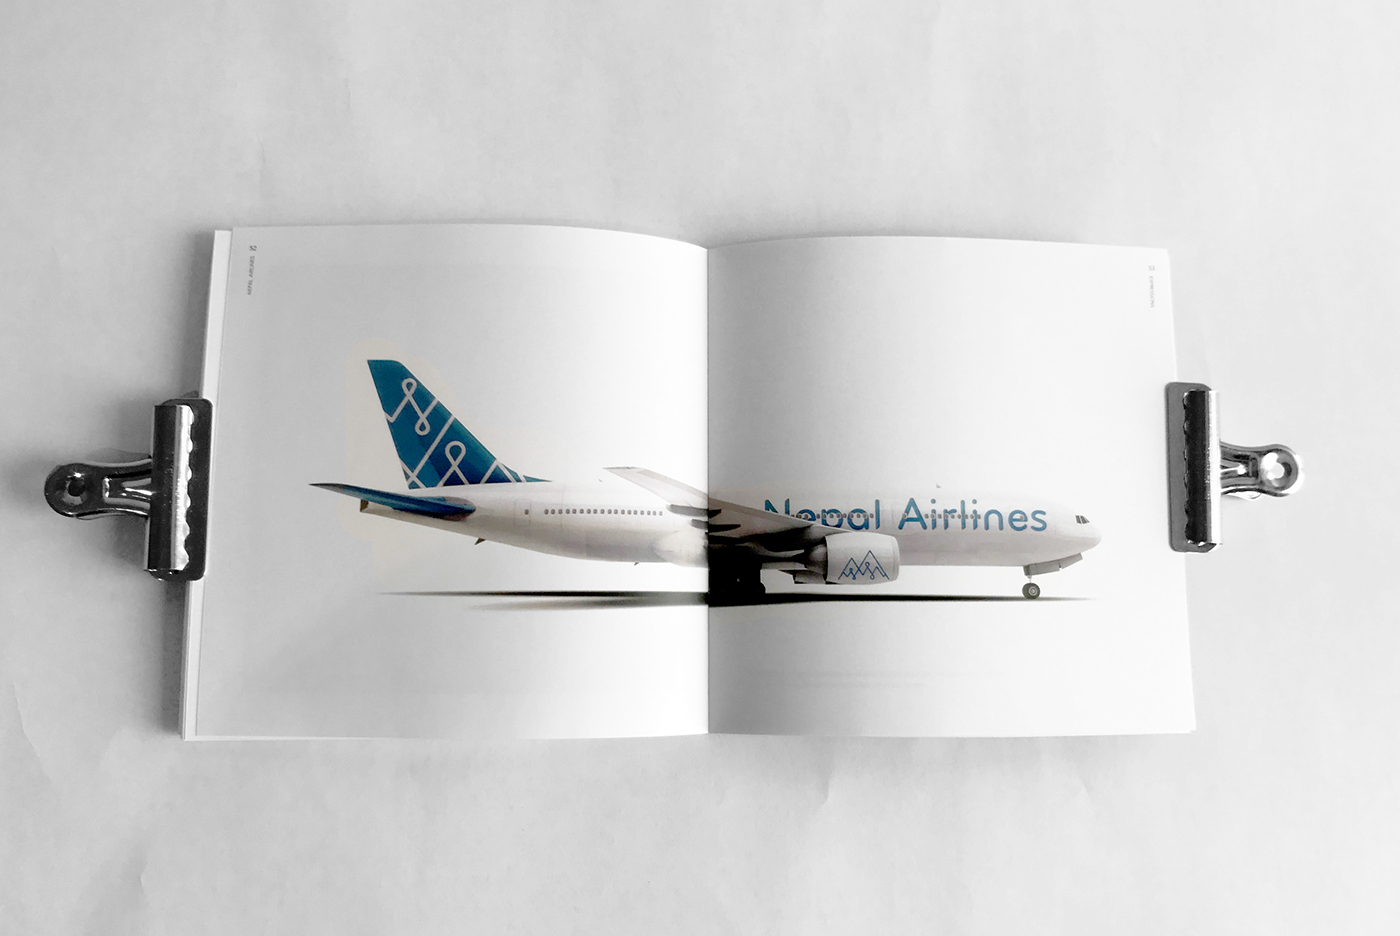 airplane branding  brand book airline nepal